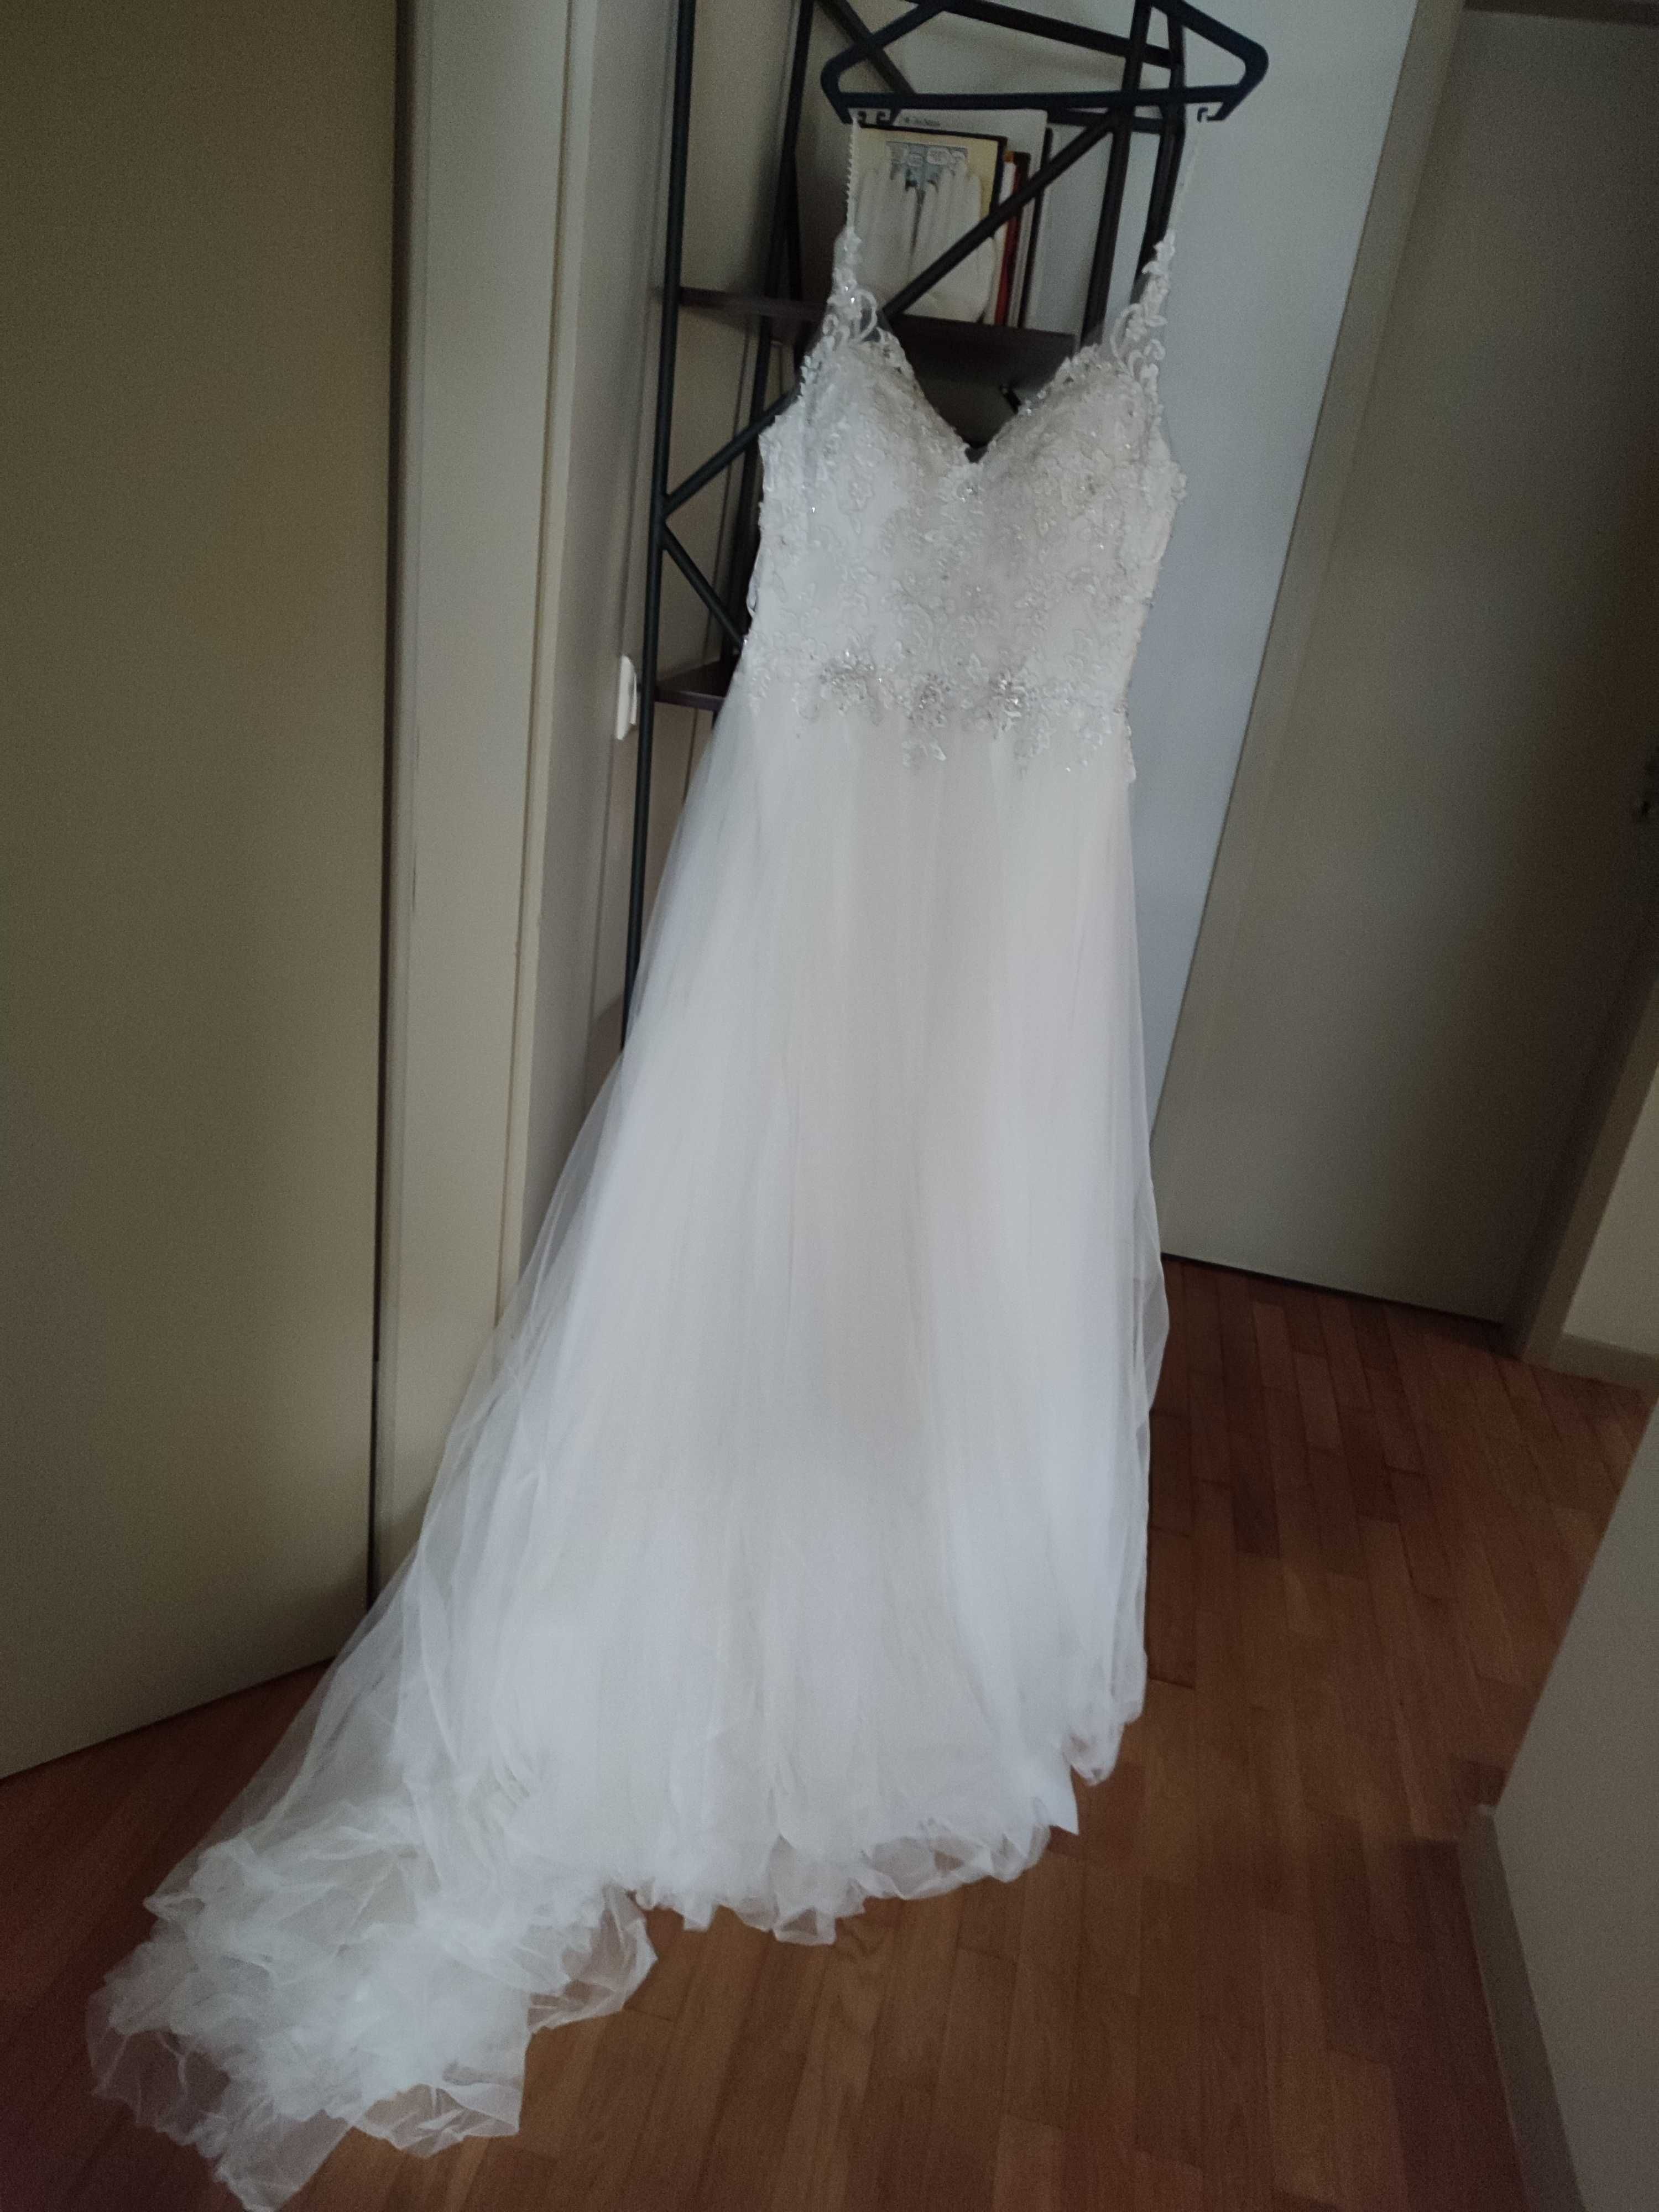 Vestido de noiva com história muito feliz